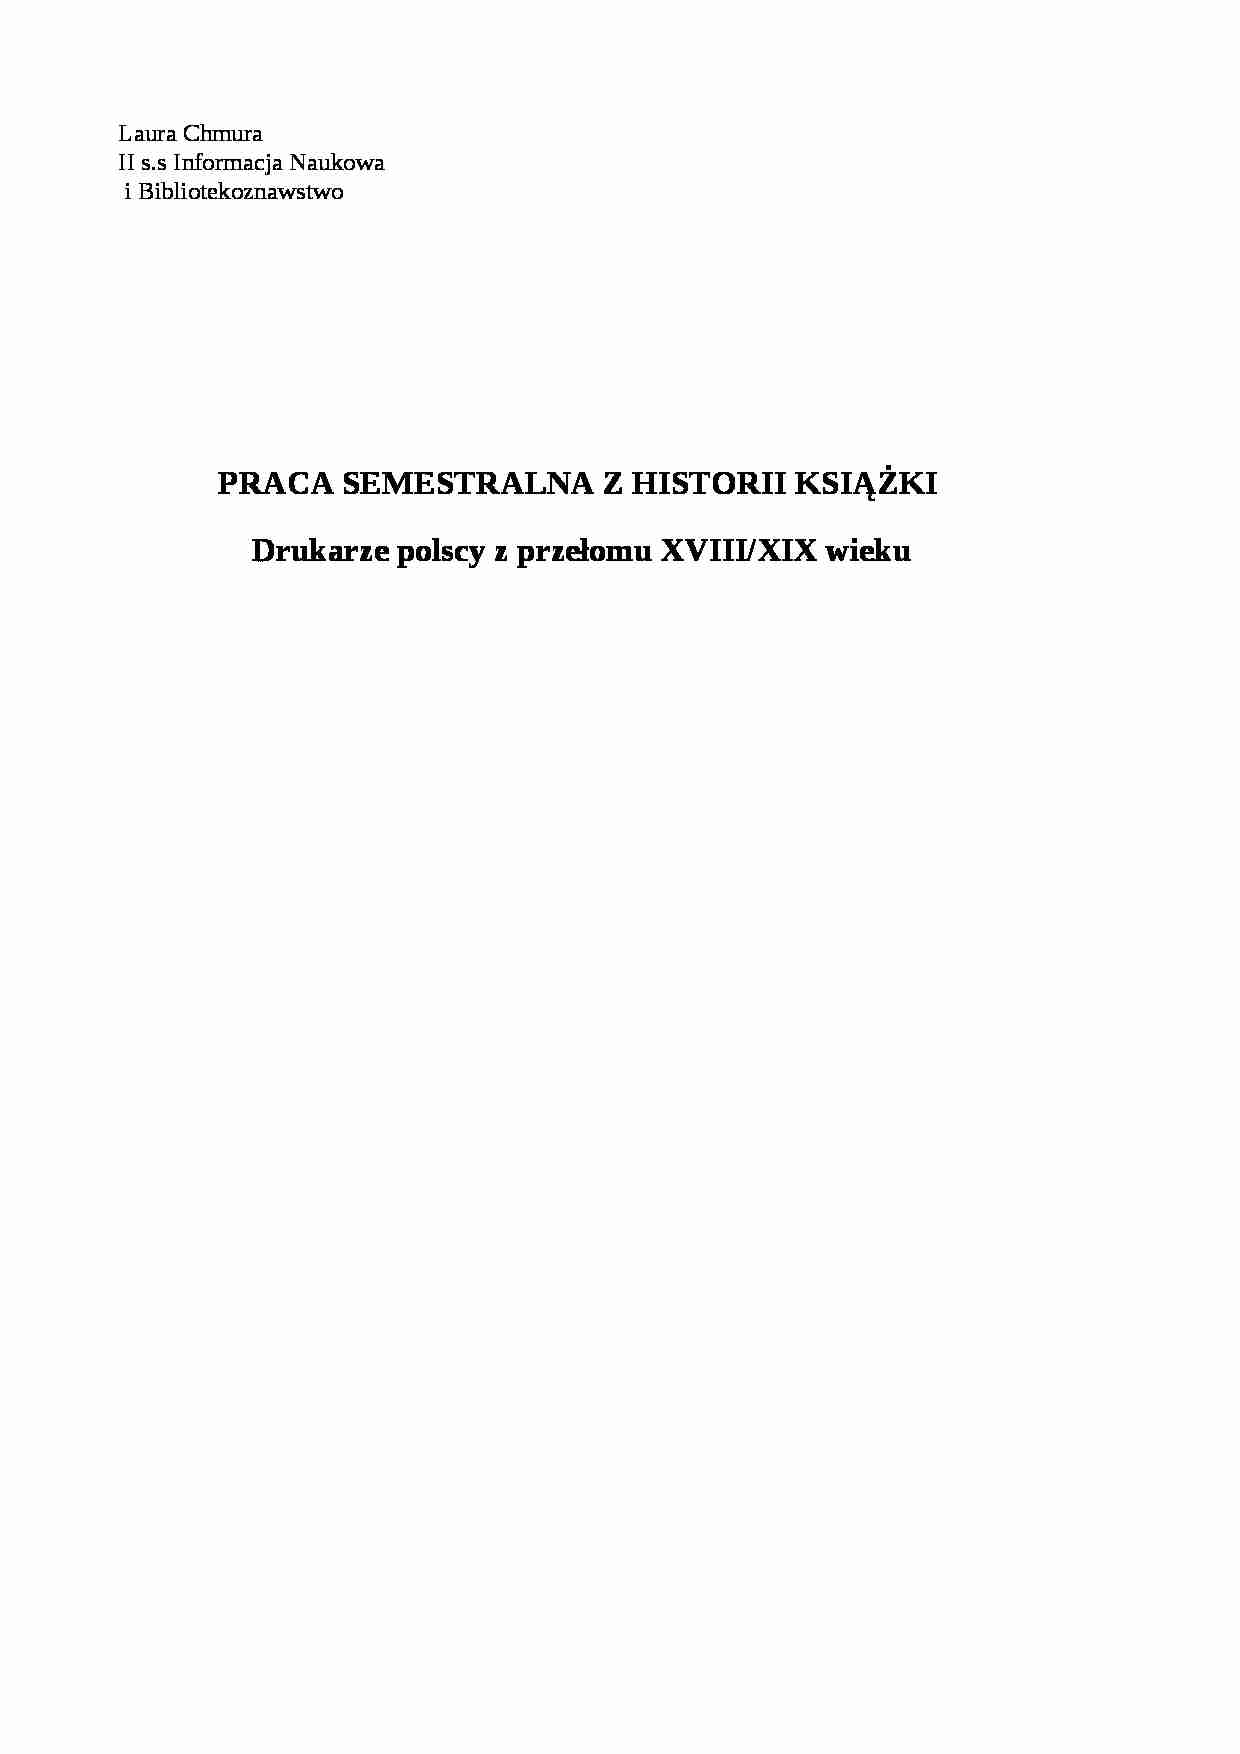 Drukarze polscy z przełomu XVIII i XIX wieku - strona 1